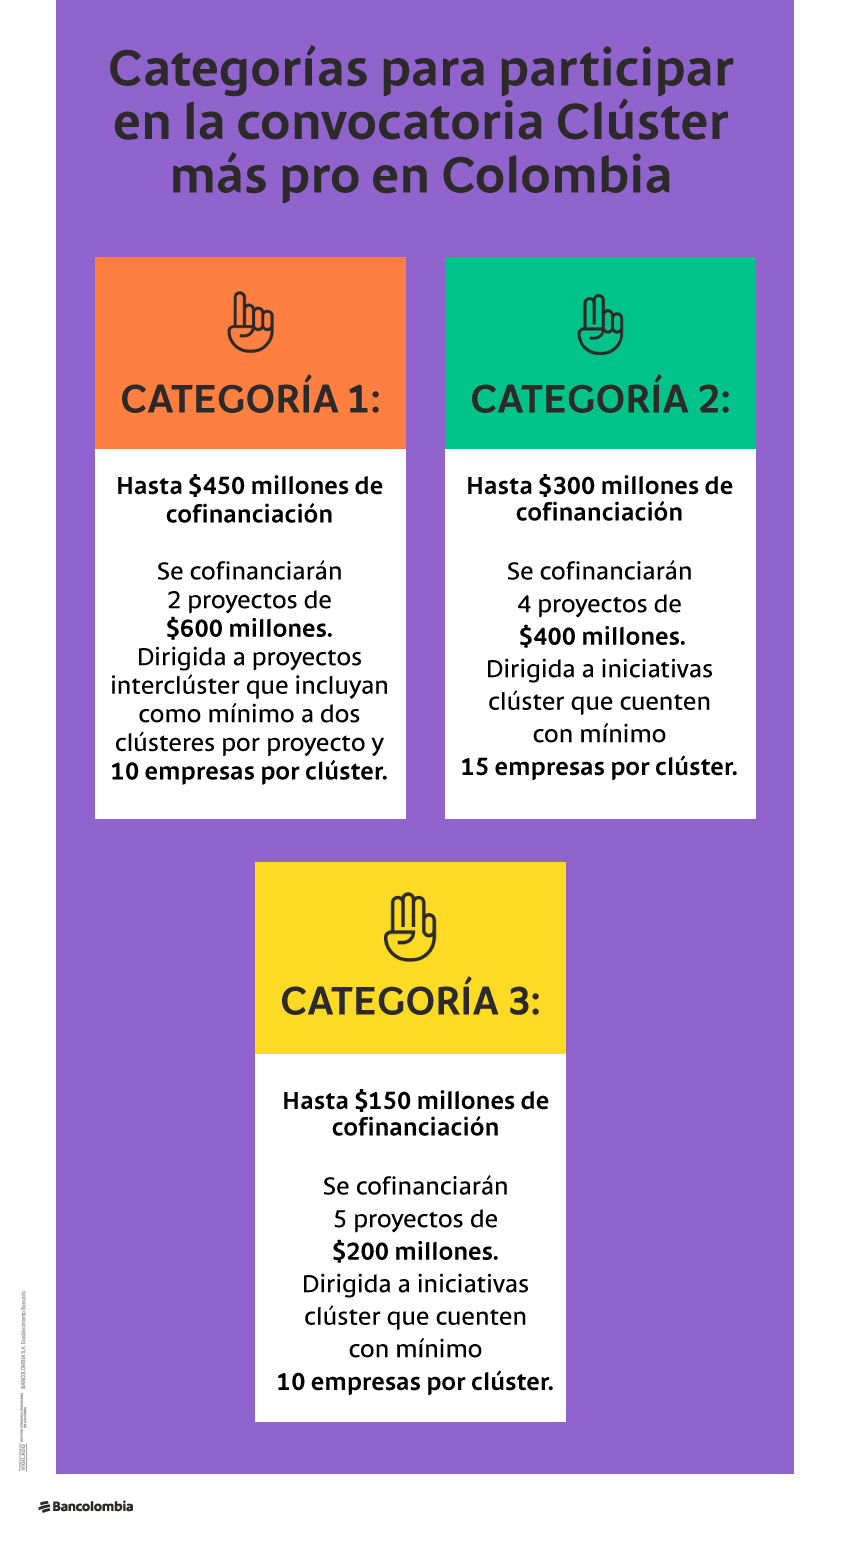 Categorías para participar en la convocatoria Clúster más pro en Colombia